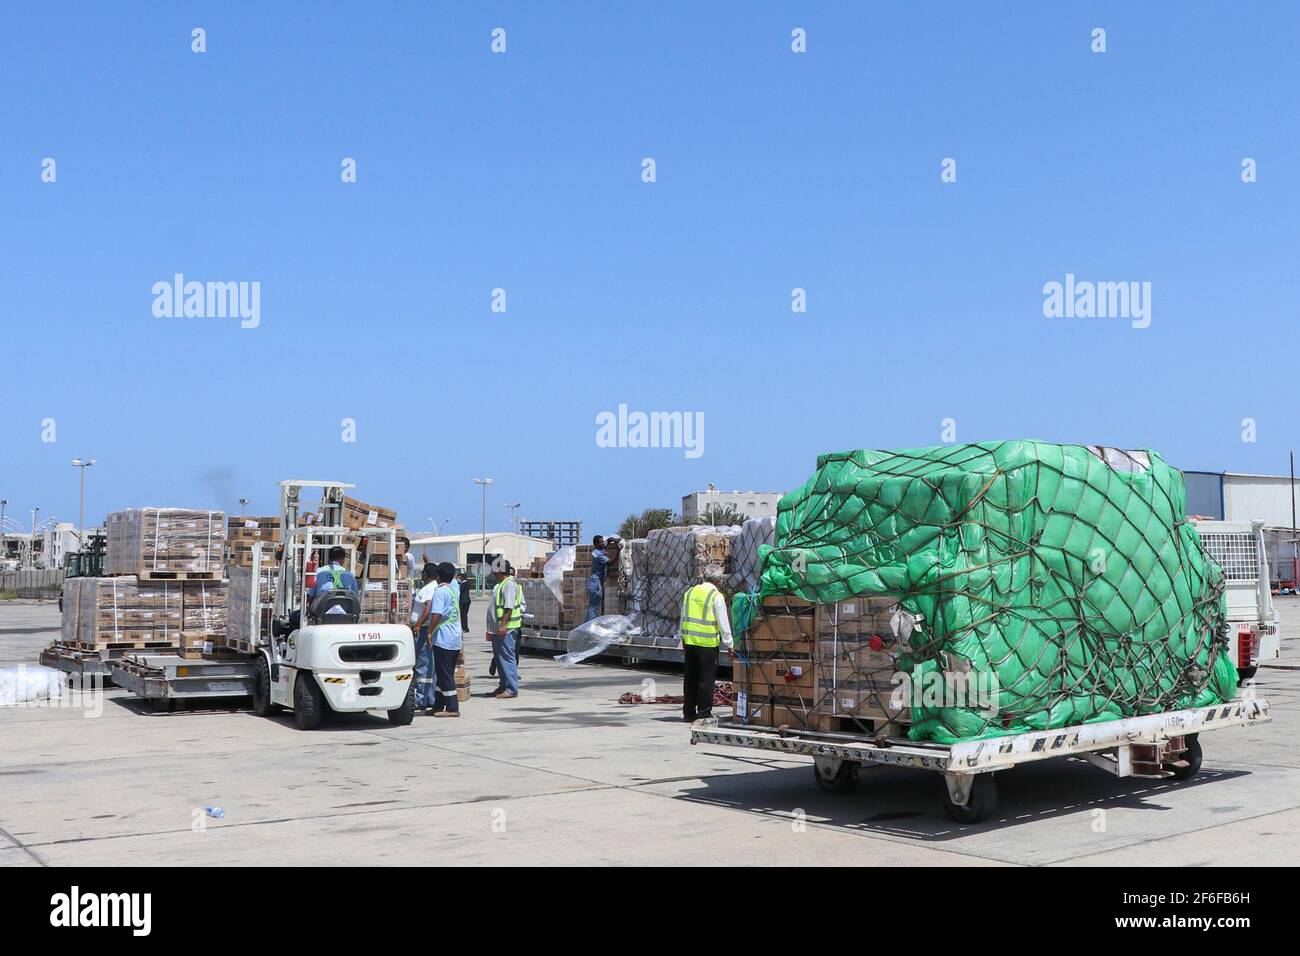 Aden, Yémen. 31 mars 2021. Les membres du personnel de l'aéroport déchargent des boîtes contenant des doses de vaccin COVID-19 à l'aéroport d'Aden. Crédit : Wail Shaif/dpa/Alay Live News Banque D'Images